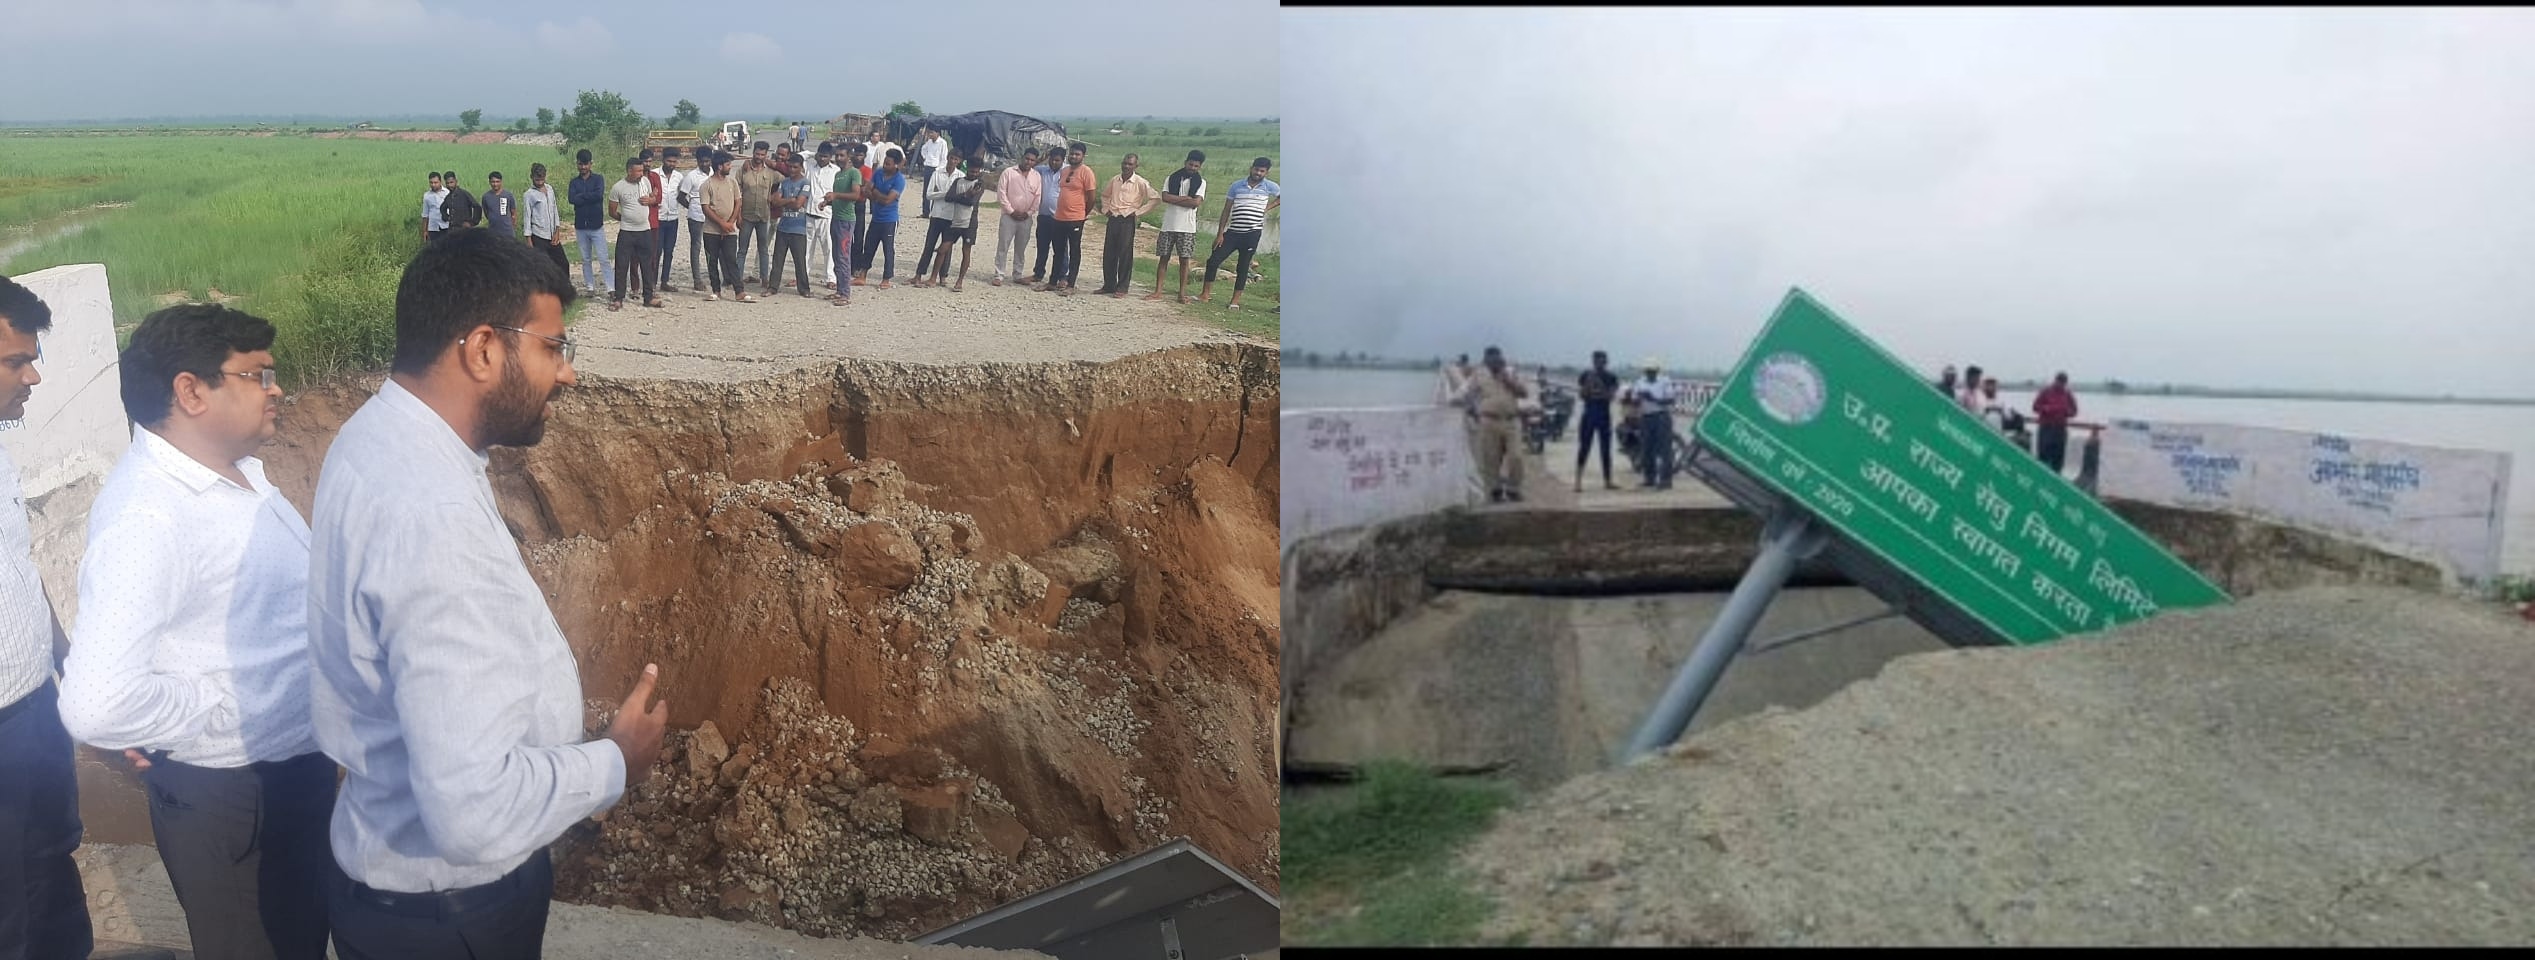 हस्तिनापुर में बाढ़ के हालात, गंगा कटान से बिजनौर को जोड़ने वाला पुल धंसा